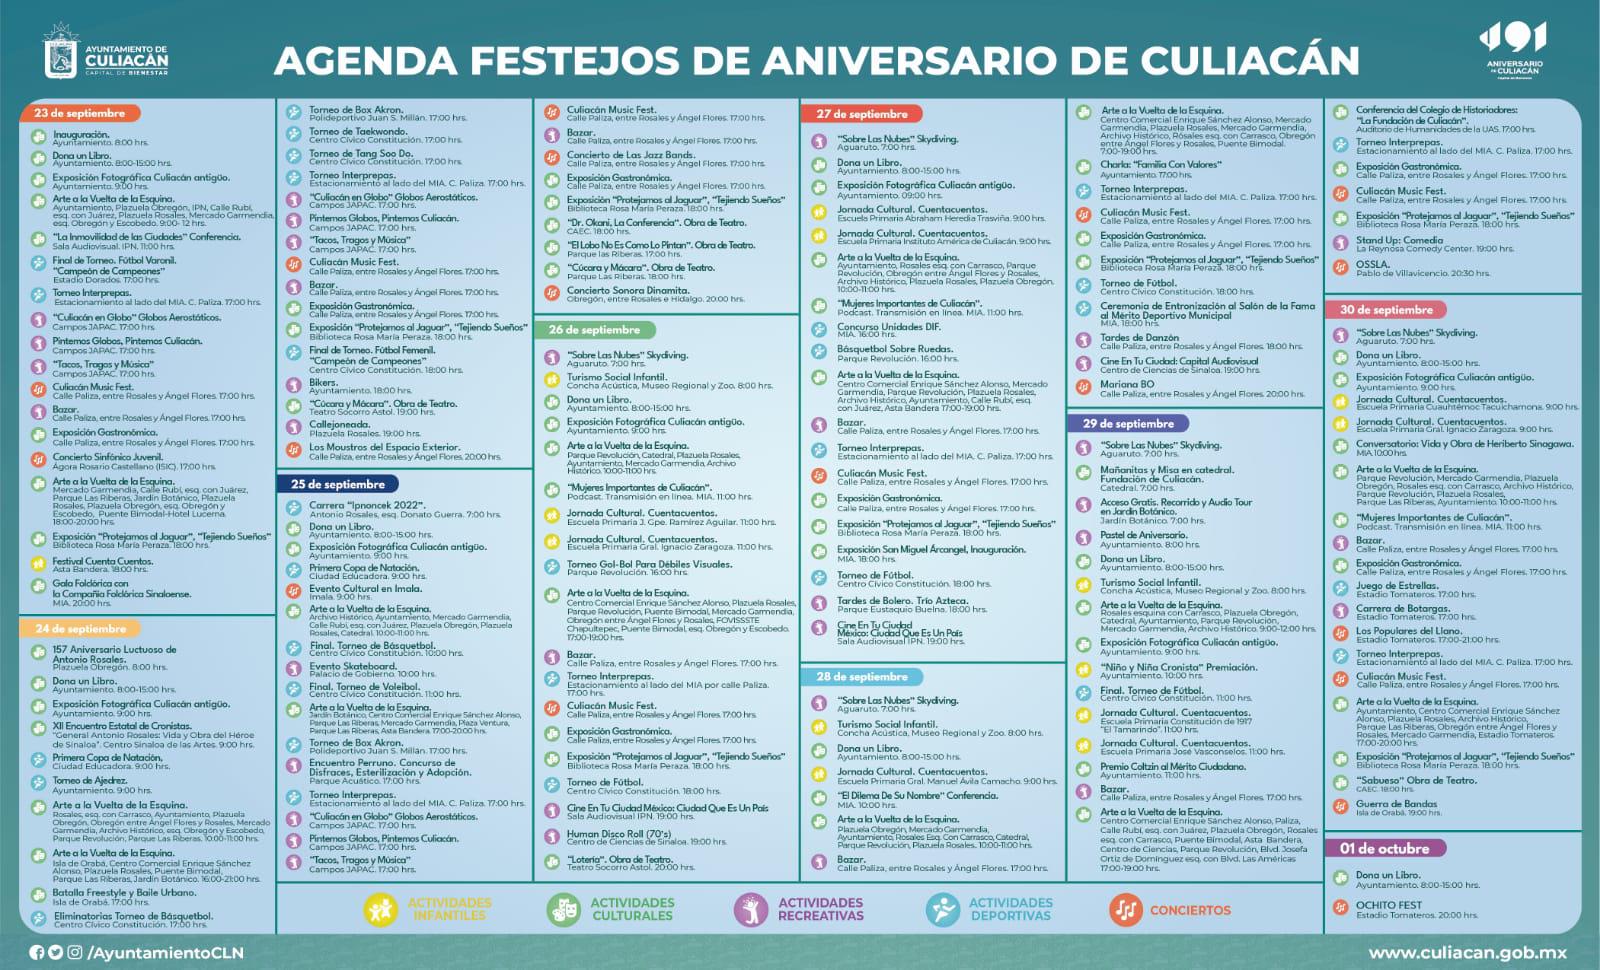 $!Gobernador y Alcalde inauguran semana de festejos por 491 aniversario de Culiacán